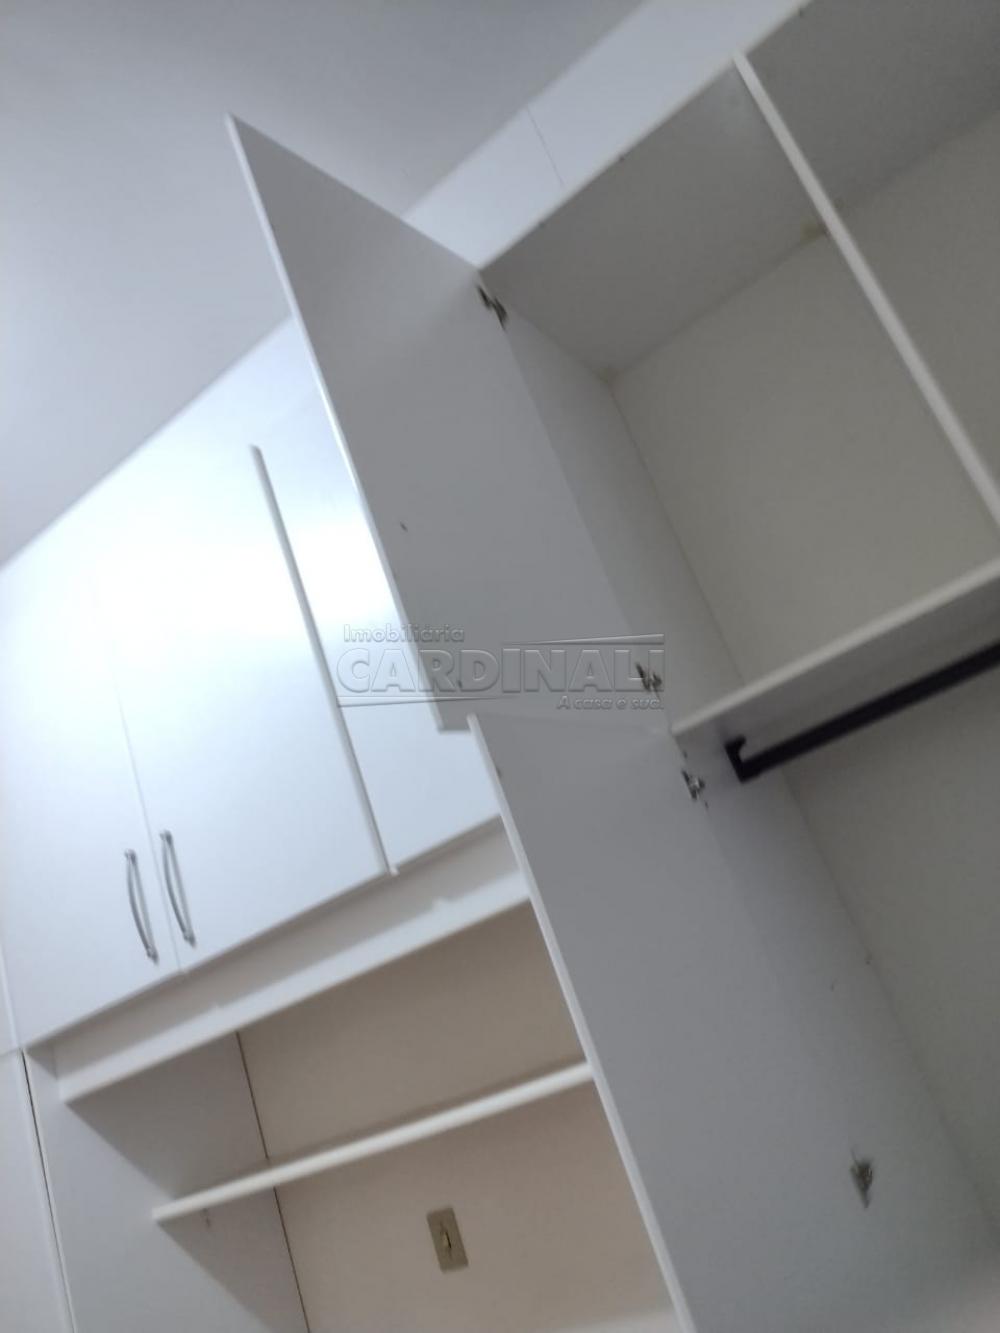 Comprar Apartamento / Padrão em São Carlos R$ 190.000,00 - Foto 14